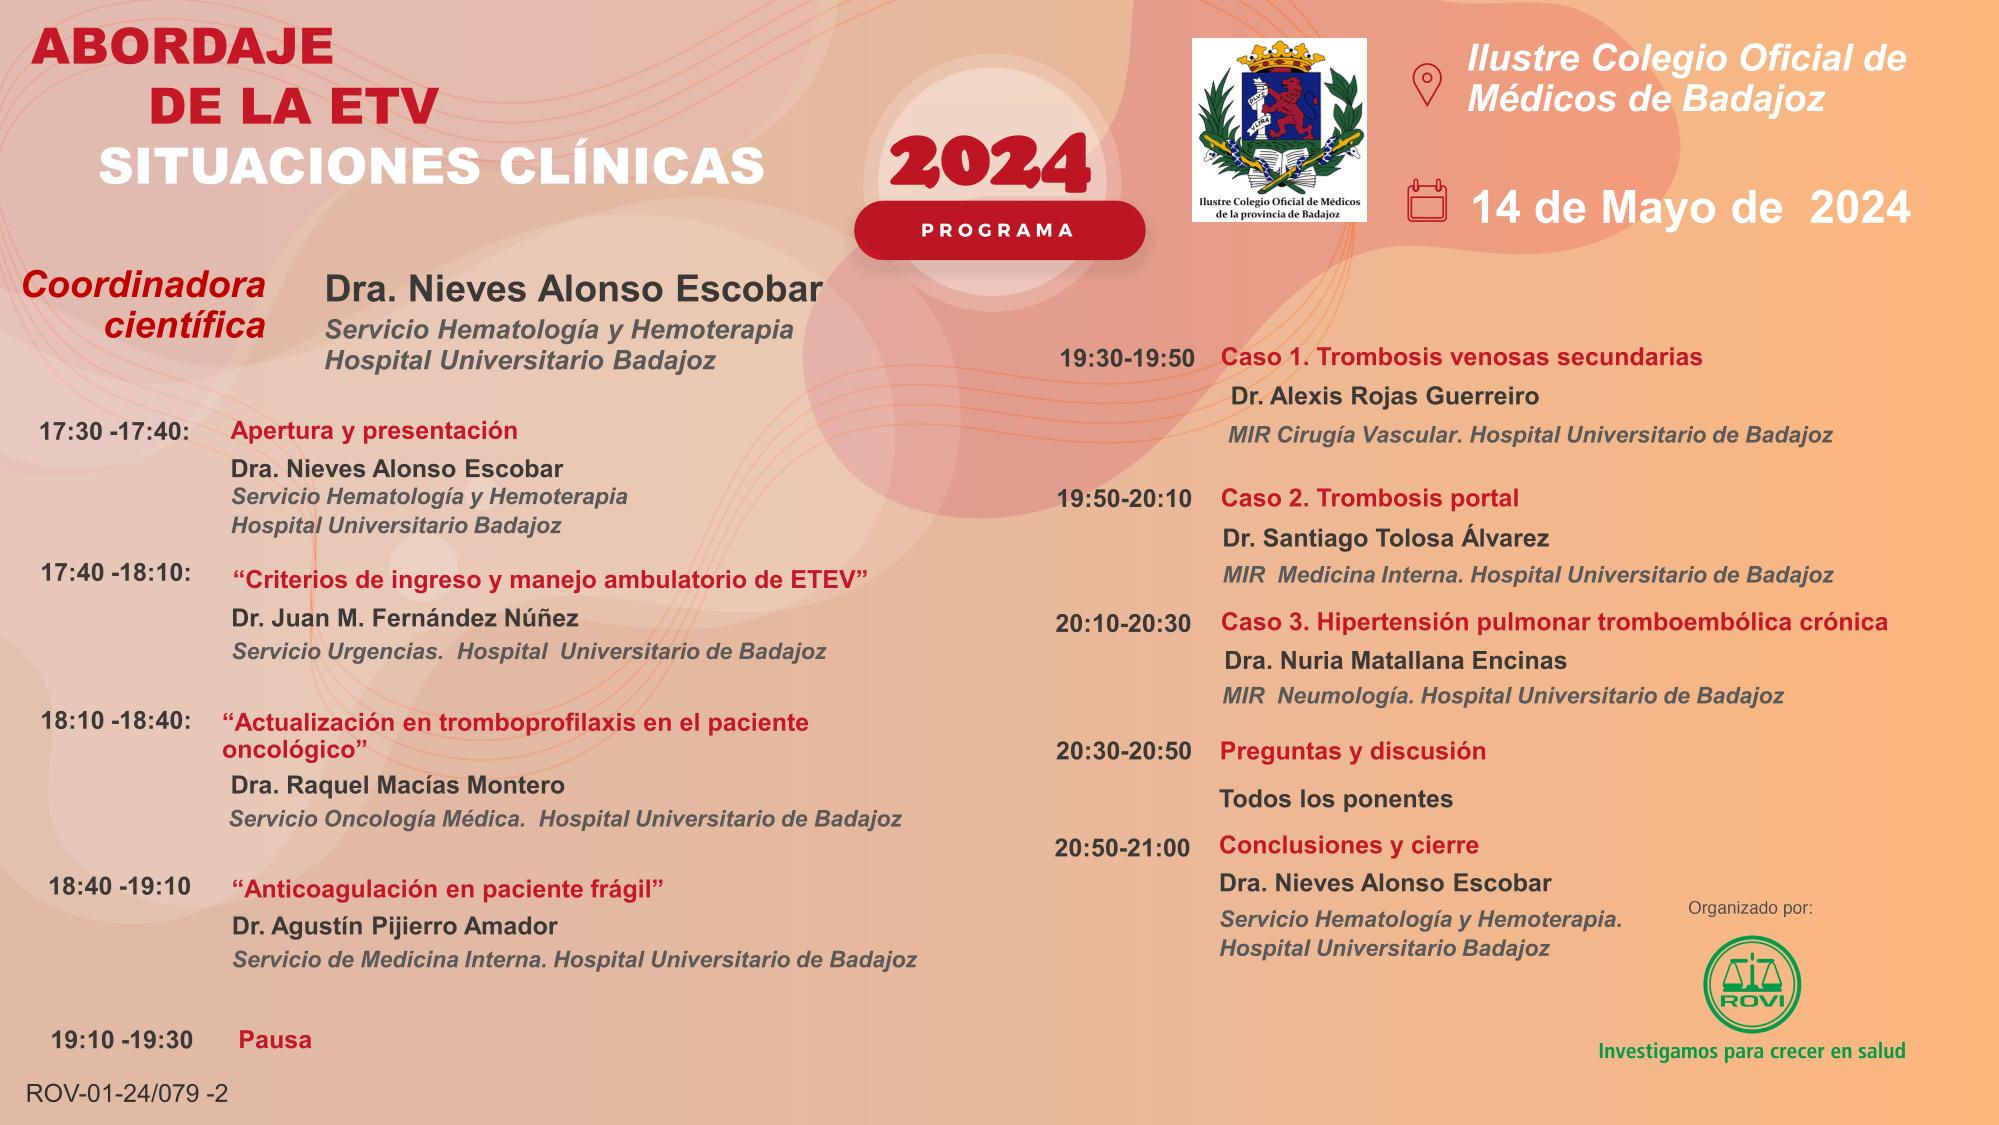 Abordaje de la ETV Situaciones clinicas 2024 Badajoz 005AC ok 1